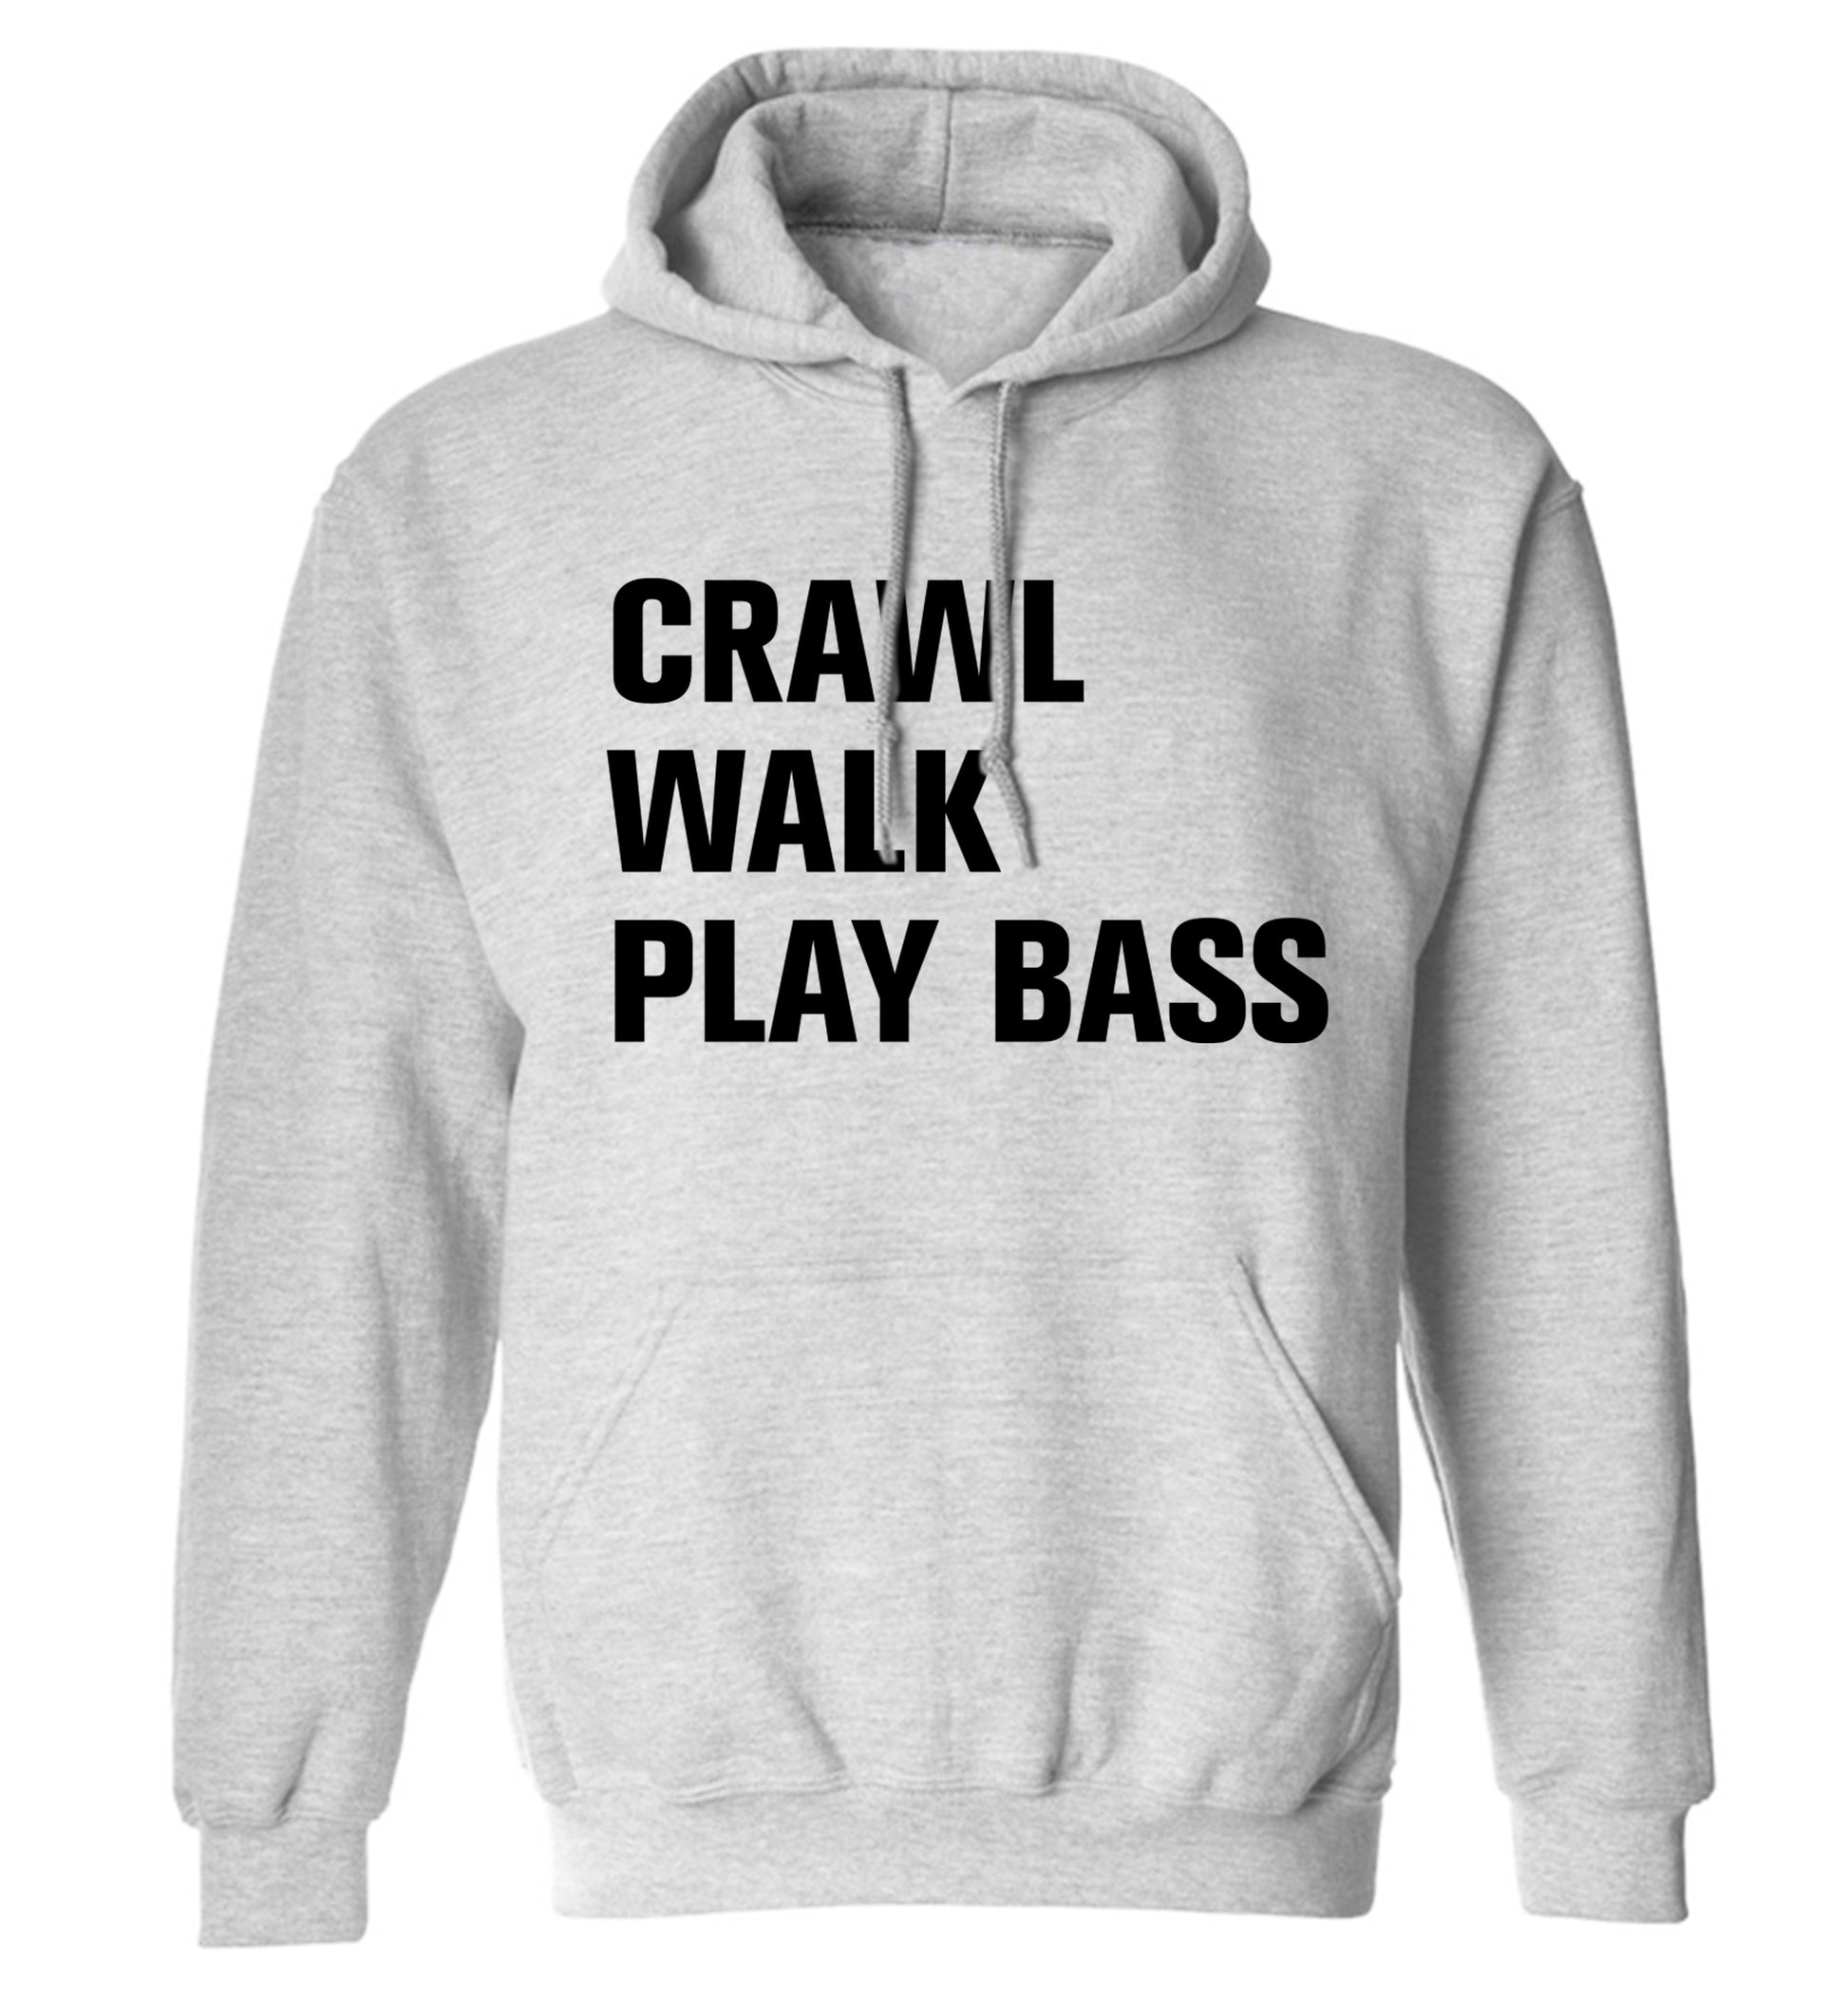 Crawl Walk Play Bass adults unisex grey hoodie 2XL